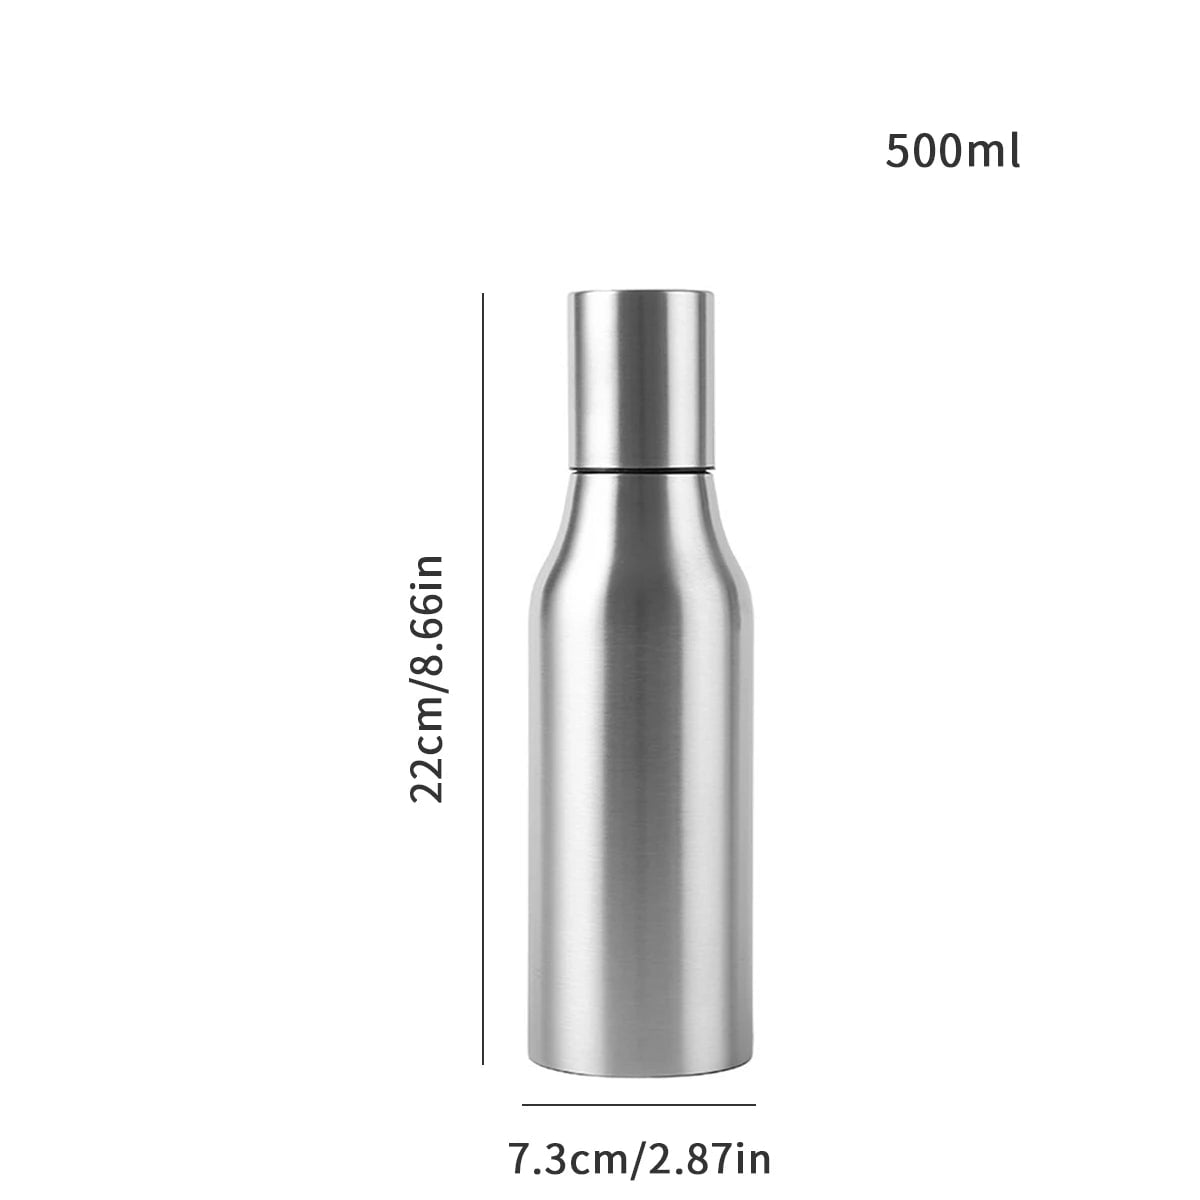 Stainless Steel Olive Oil Dispenser - Leakproof Oil Vinegar Pourer Bottle for Kitchen Accessories 500ml